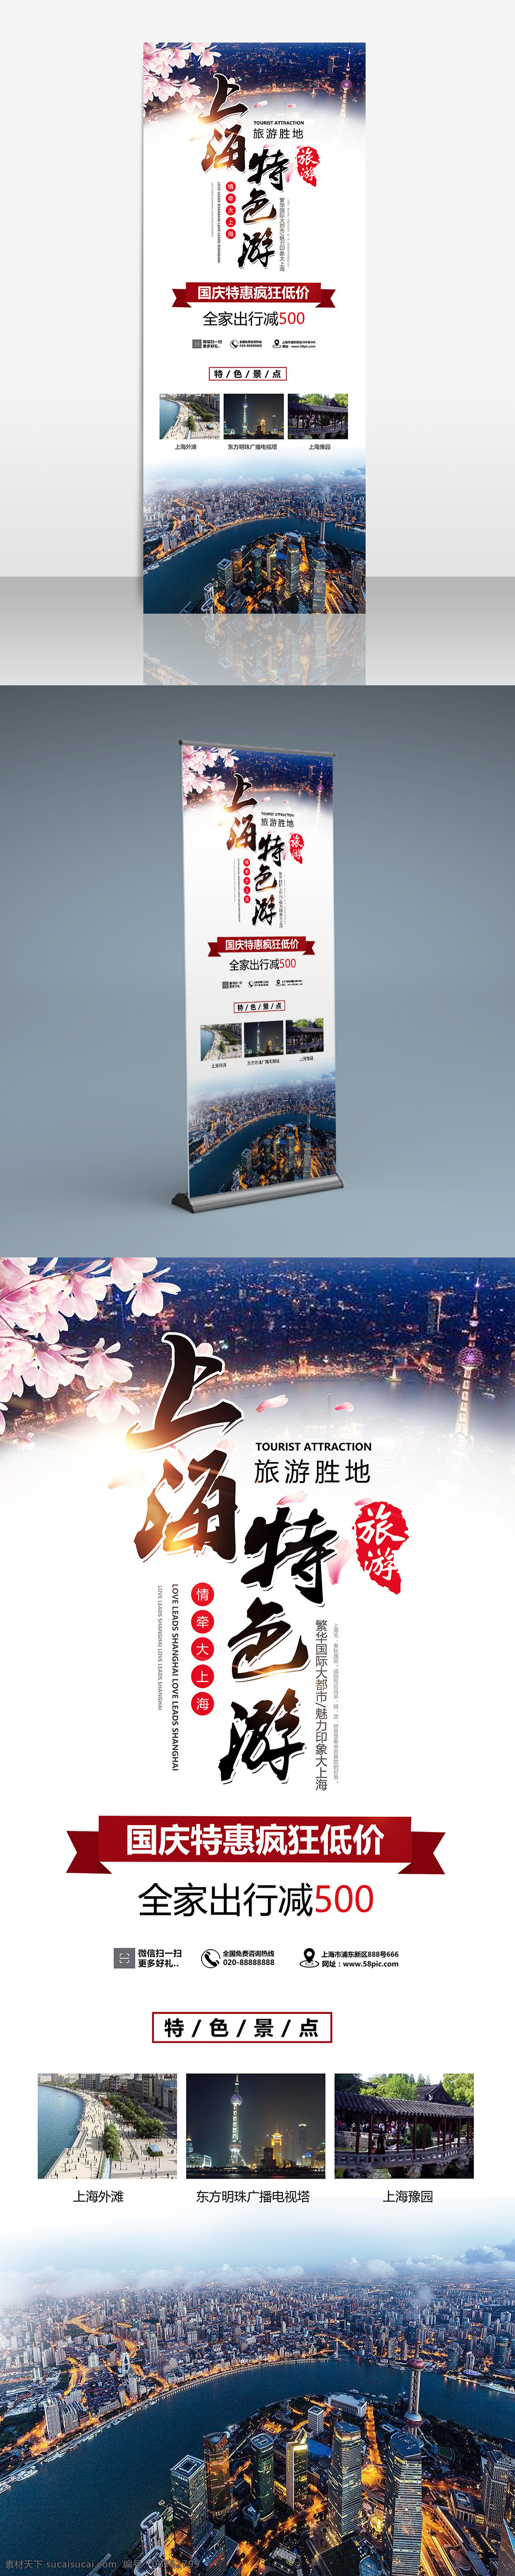 中国 旅游景点 上海 展架 上海旅游展架 花 白色背景 中国风 国庆特惠 休闲娱乐 旅游 国际大都市